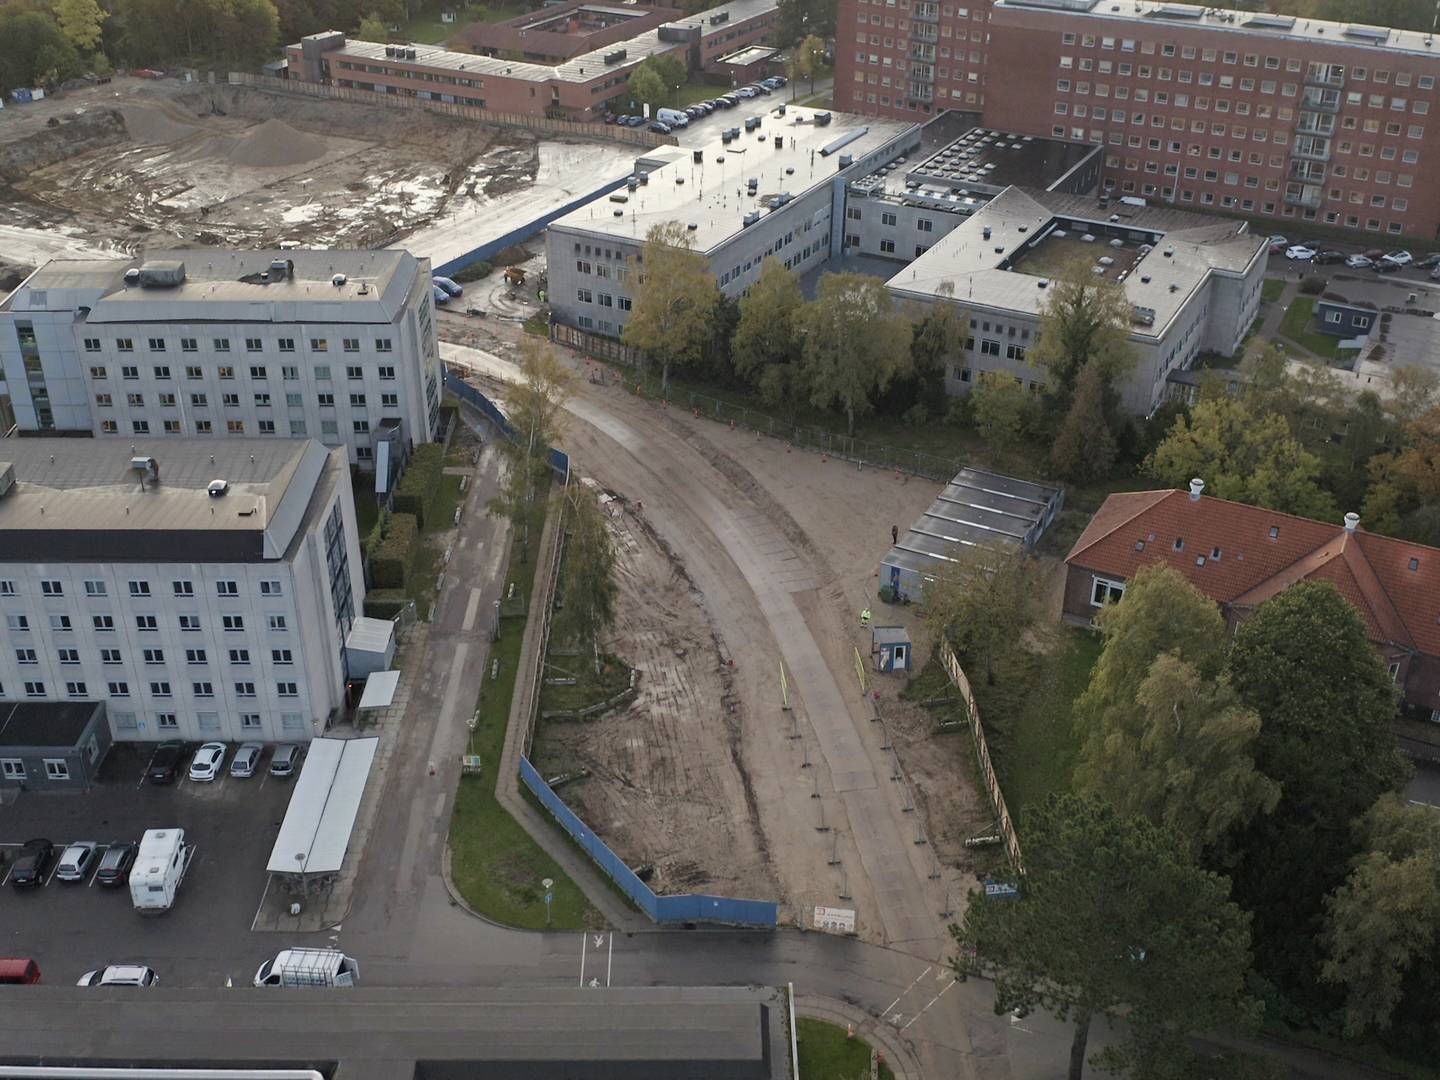 Etape 1 opføres på byggepladsen bag Lersø-komplekset (bagerst til venstre). I næste etape nedrives den eksisterende psykiatri (de to hvide bygninger forrest til venstre), så etape 2 af nybyggeriet kan opføres. | Foto: Martin Budig.